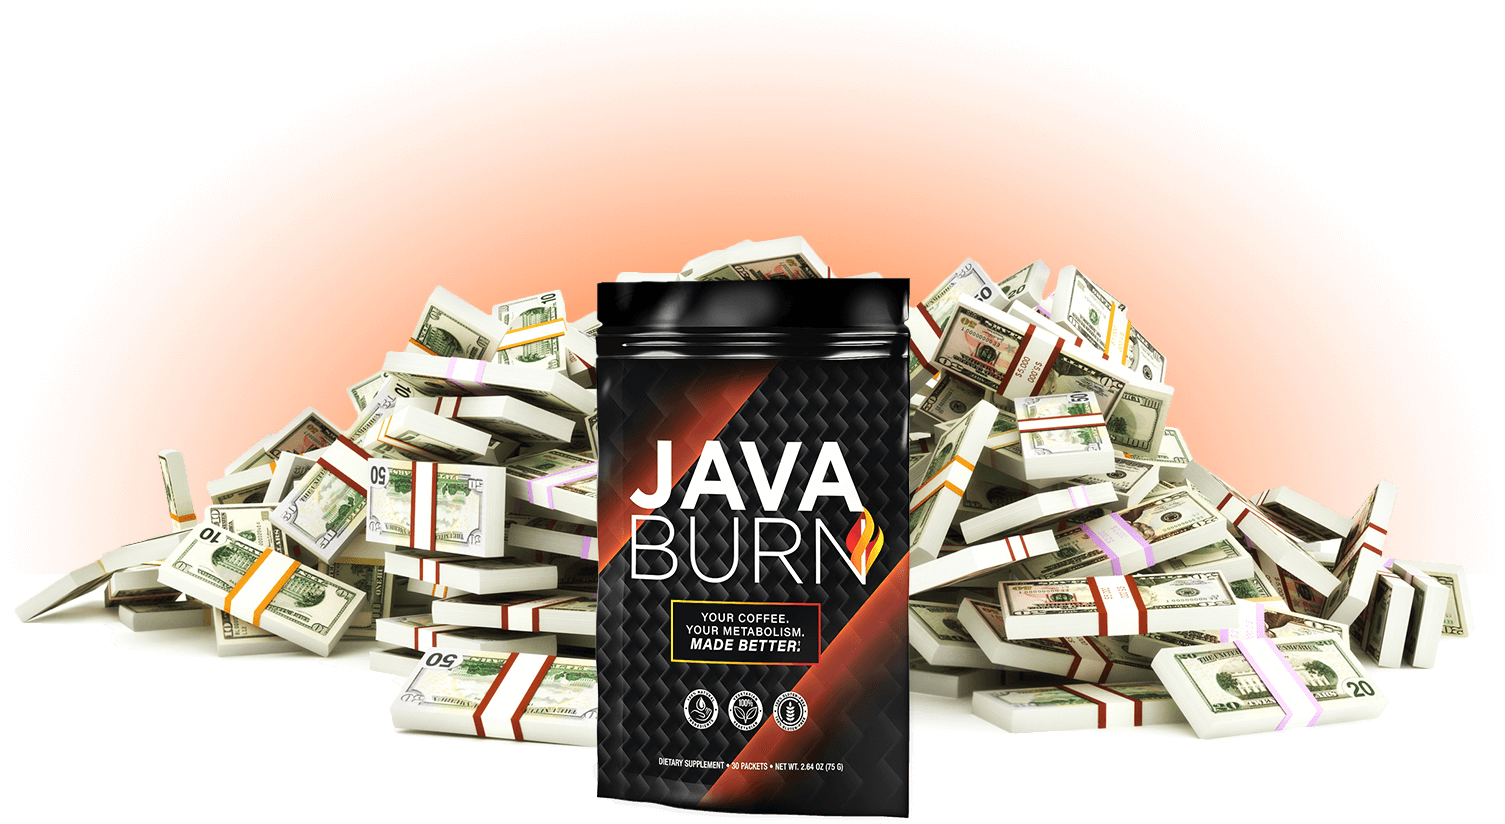 Java Burn 1 Million Dollars